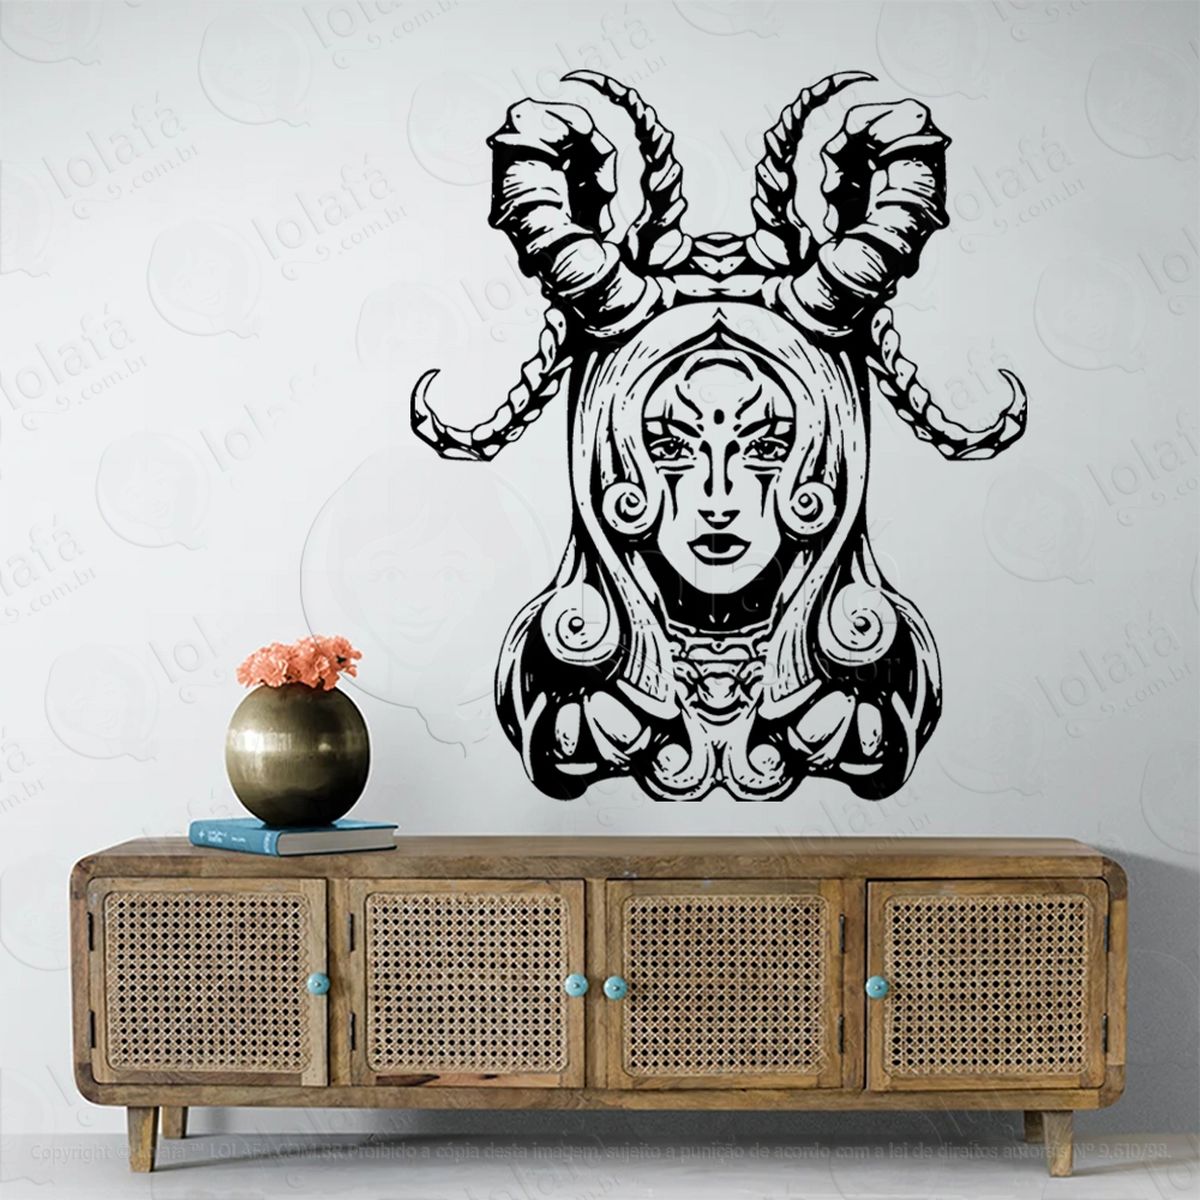 mulher ocultista occult woman adesivo de parede decorativo para casa, sala, quarto, vidro e altar ocultista - mod:85